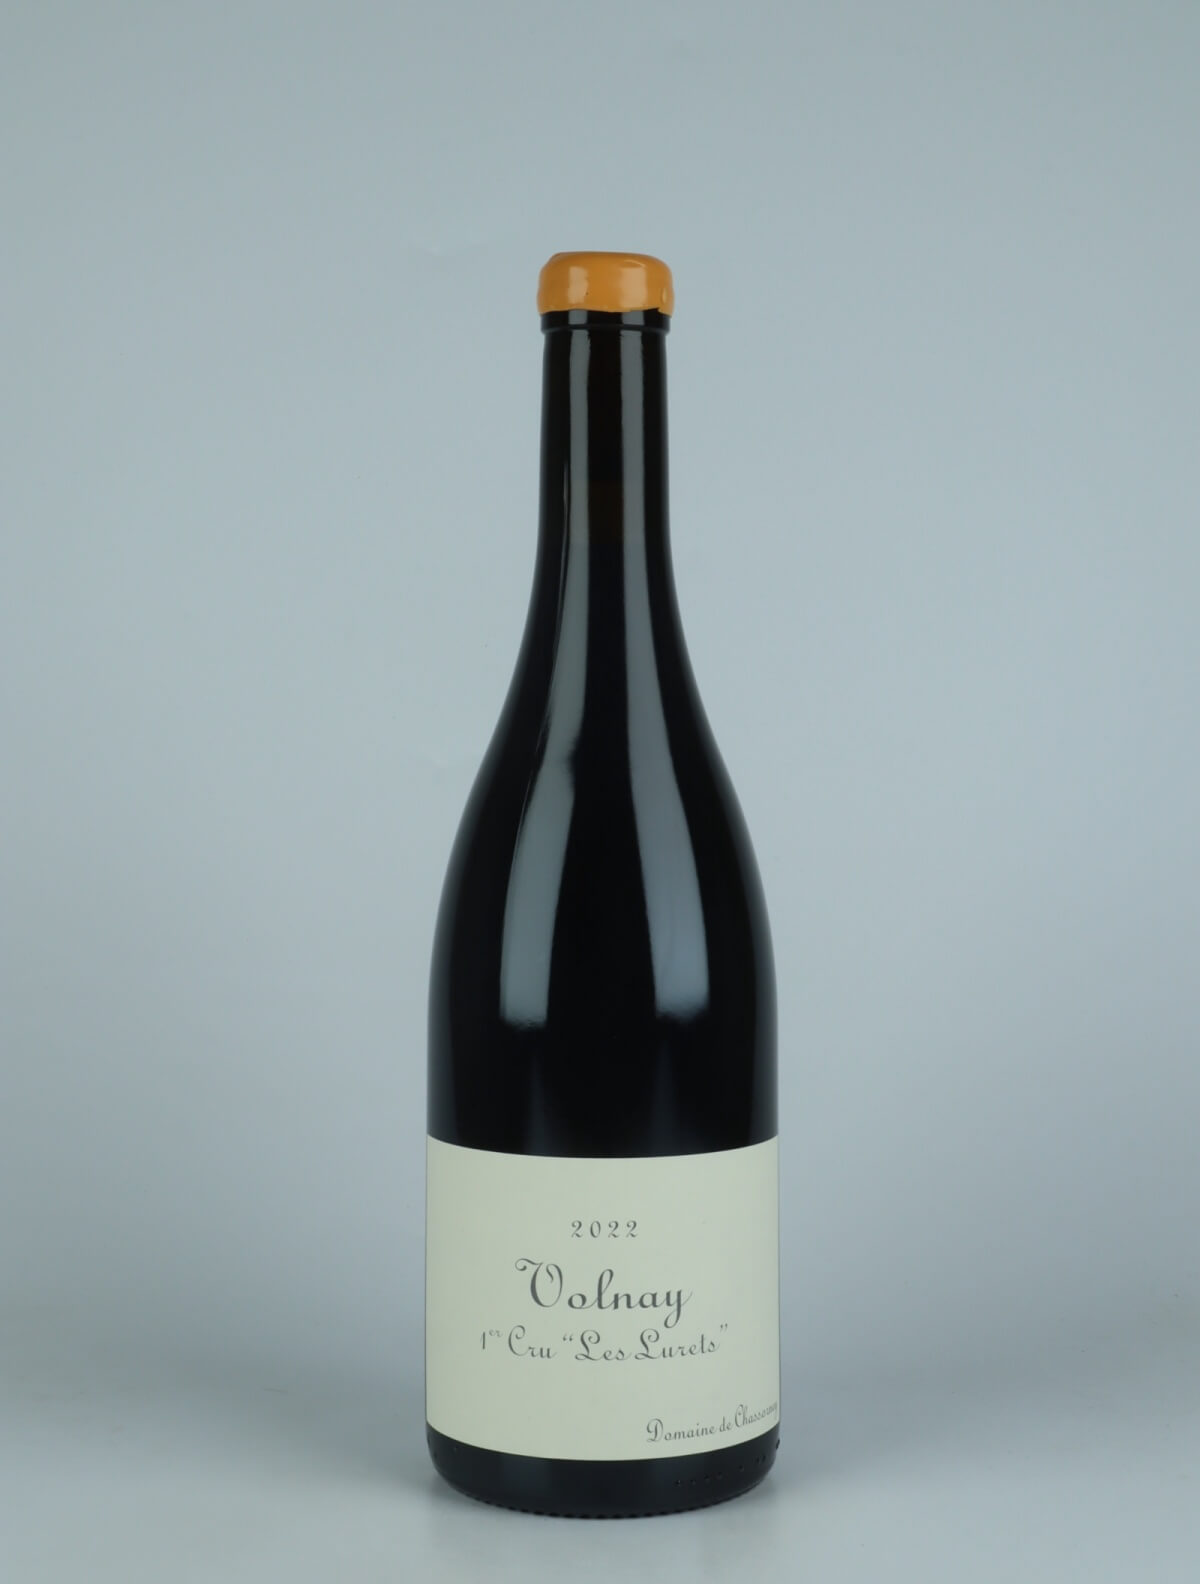 En flaske 2022 Volnay 1. Cru - Les Lurets Rødvin fra Domaine de Chassorney, Bourgogne i Frankrig